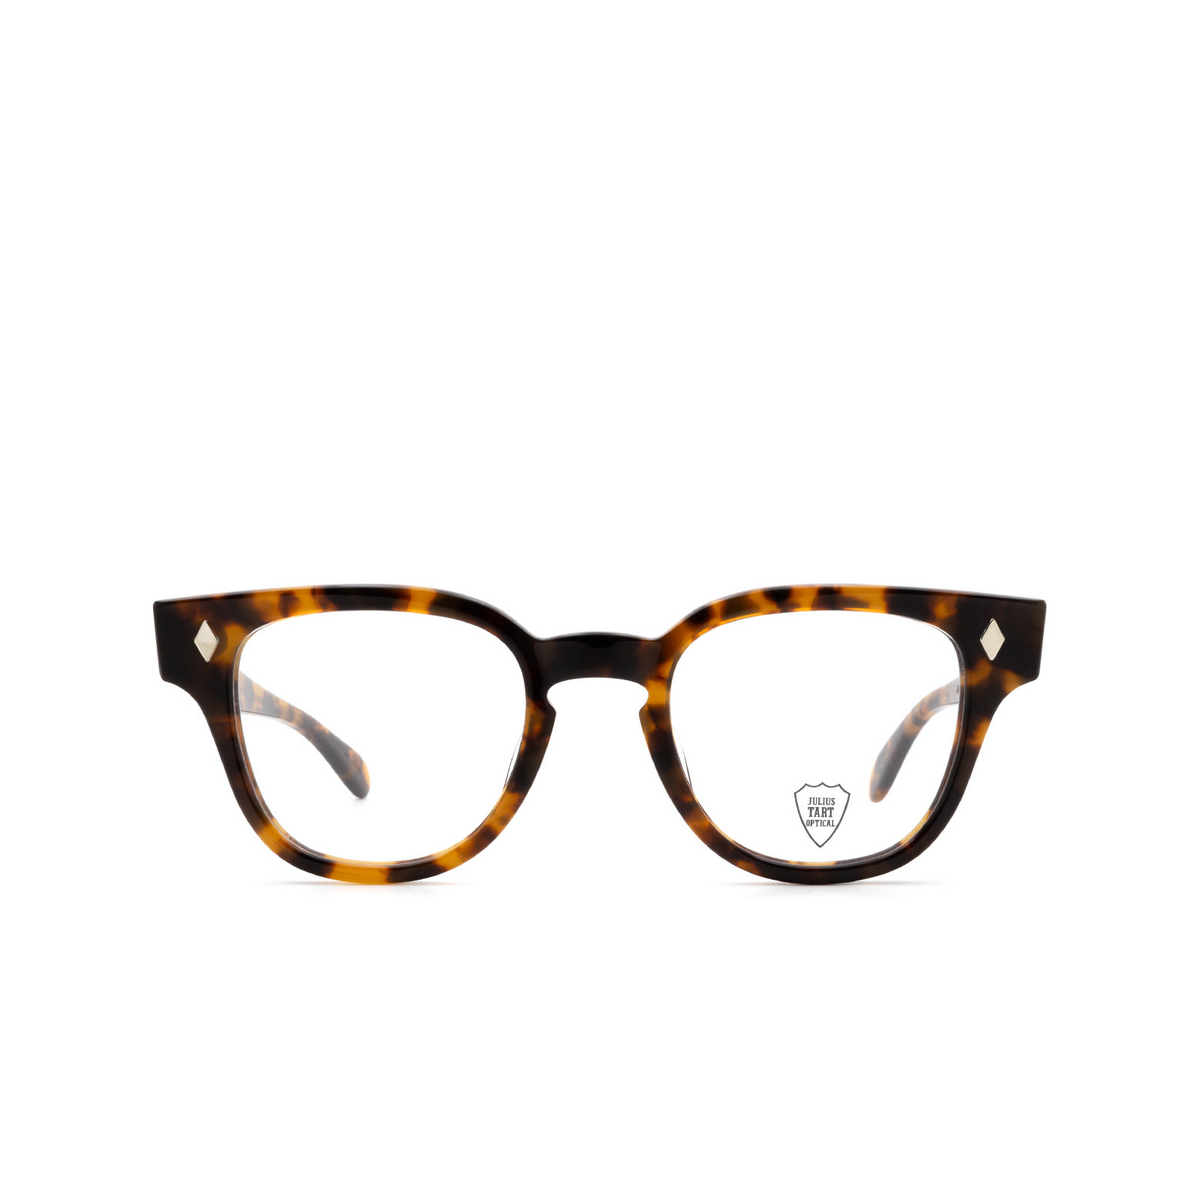 Julius Tart BRYAN Eyeglasses TORTOISE - front view